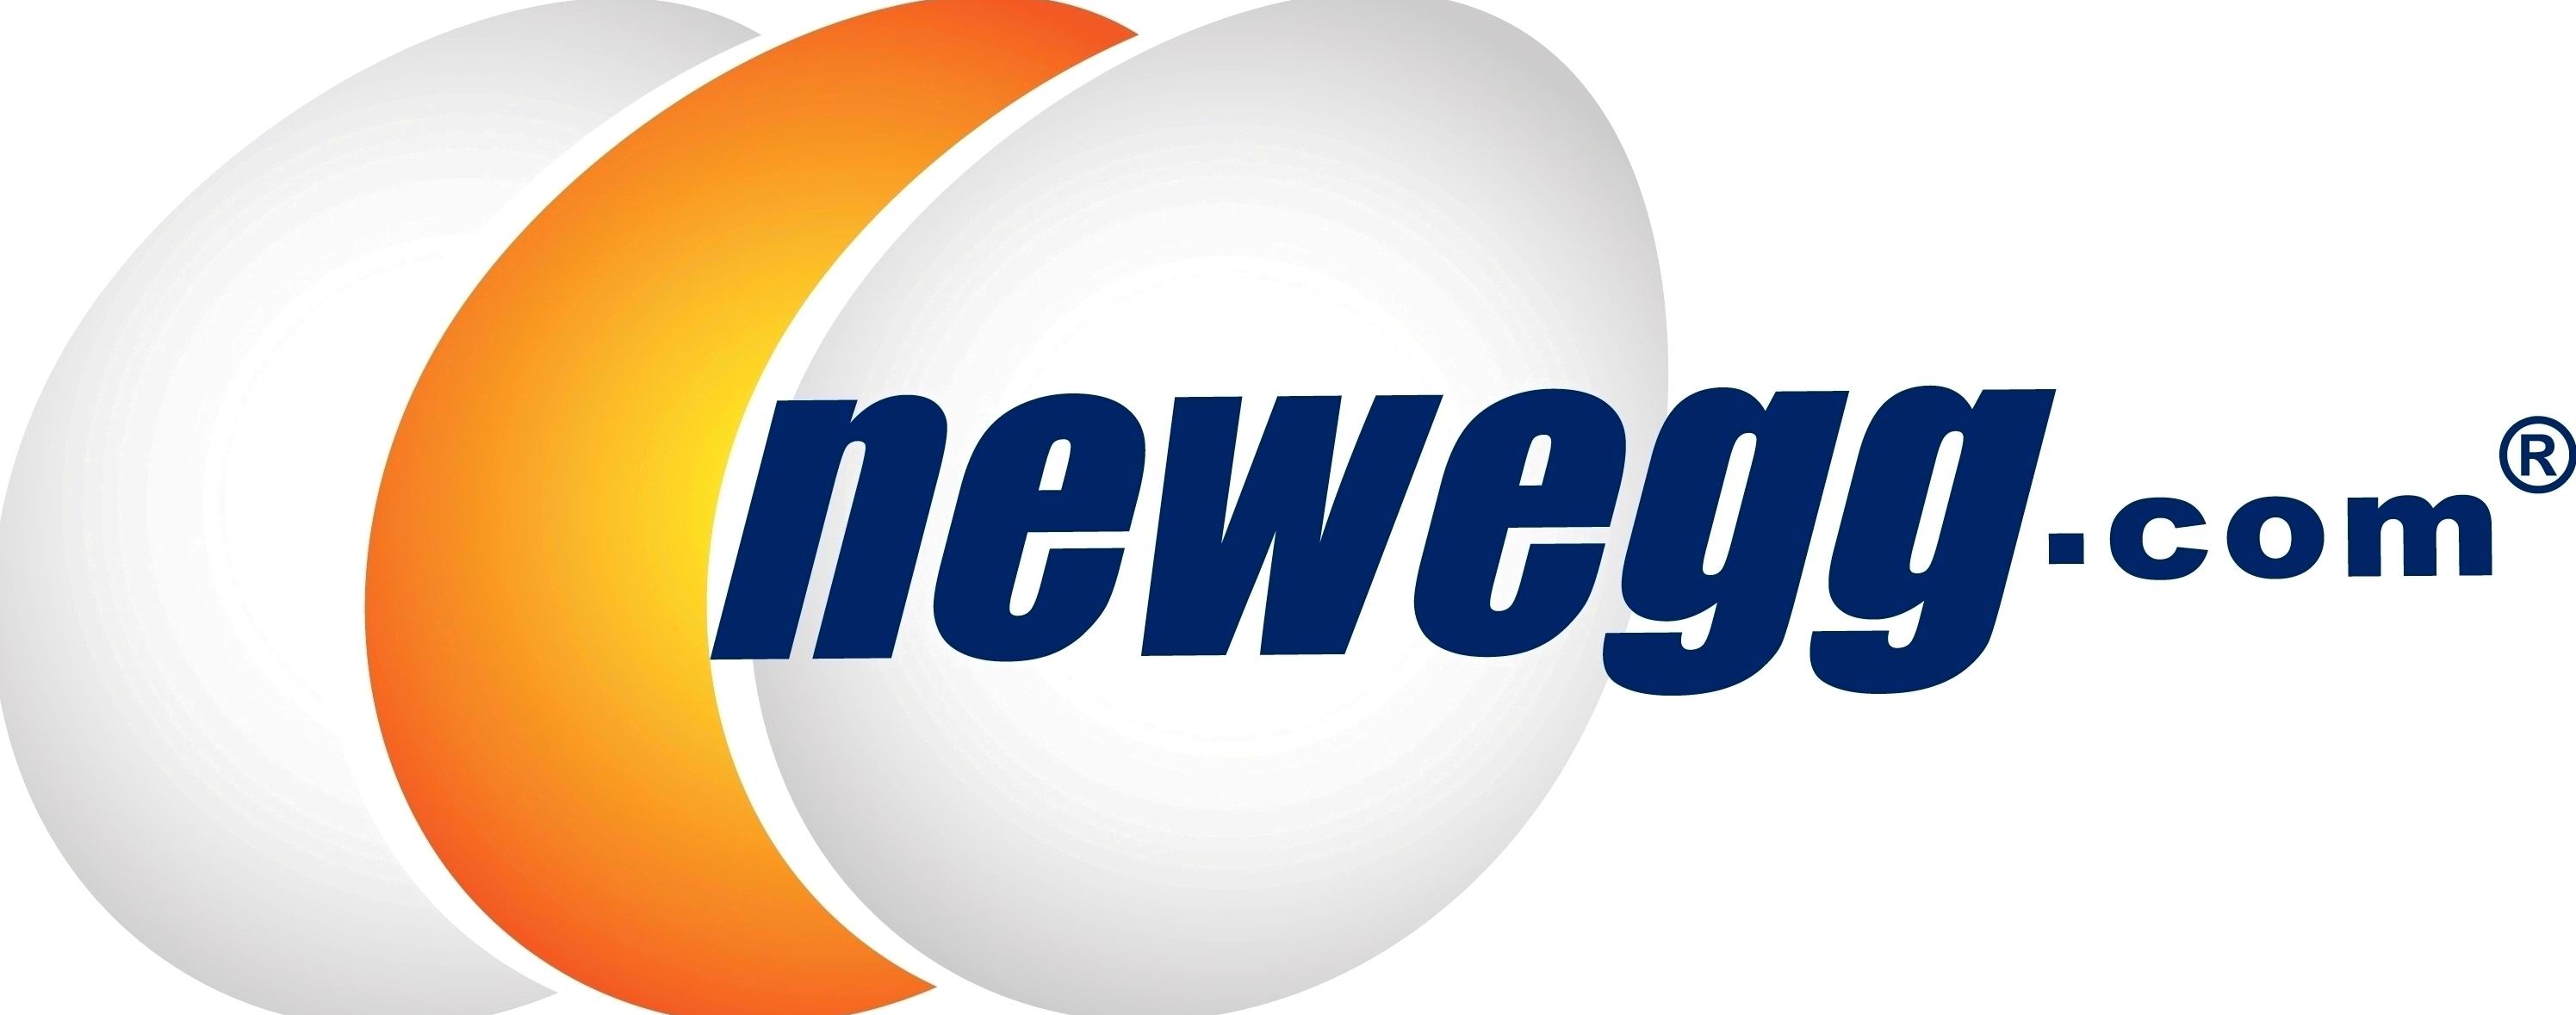 Best Online Shopping Sites - Newegg